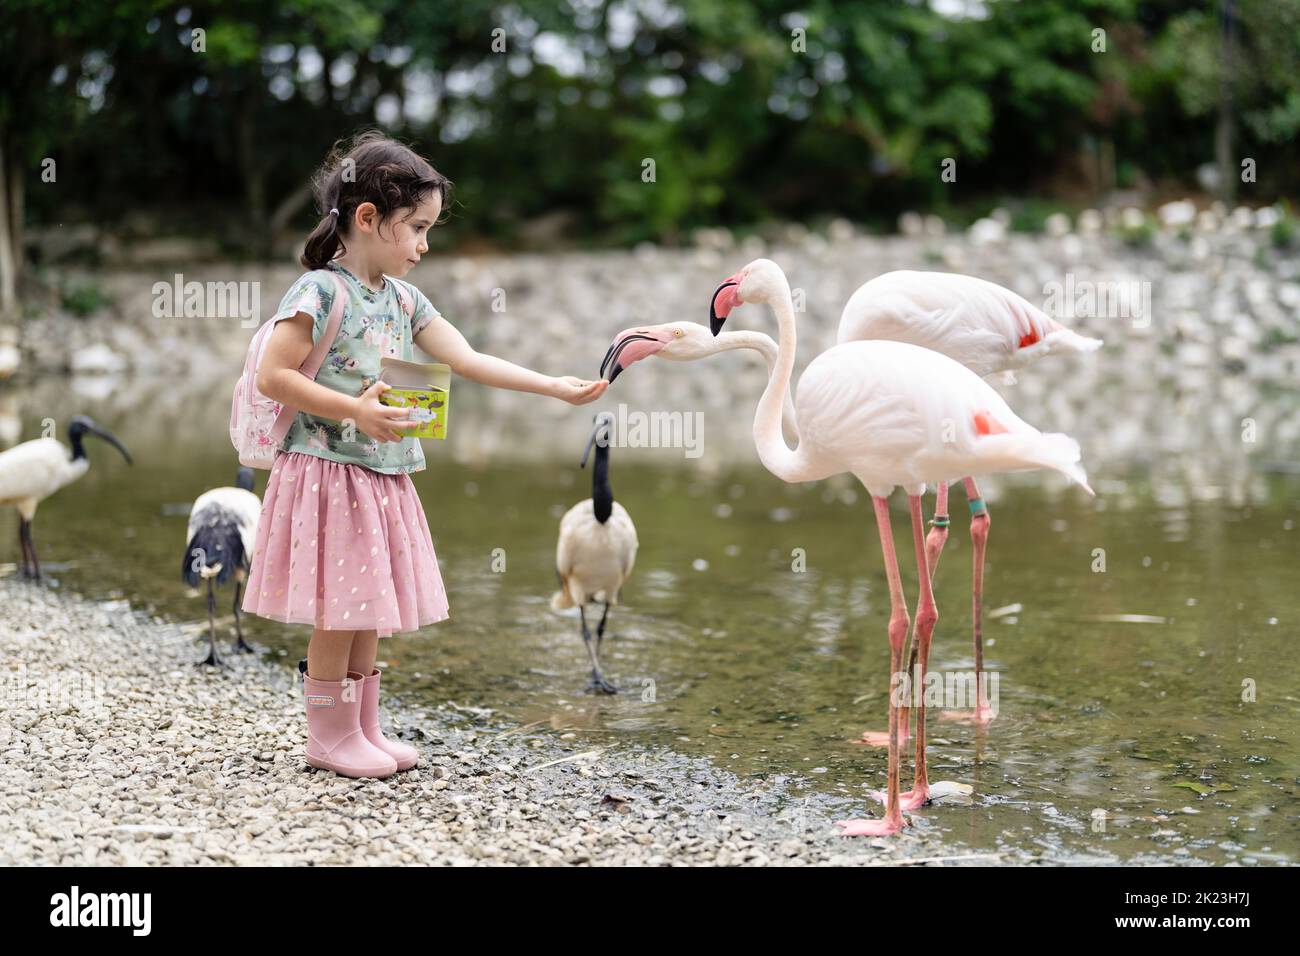 Feeding the flamingos at Neo Park, Nago, Okinawa. Stock Photo